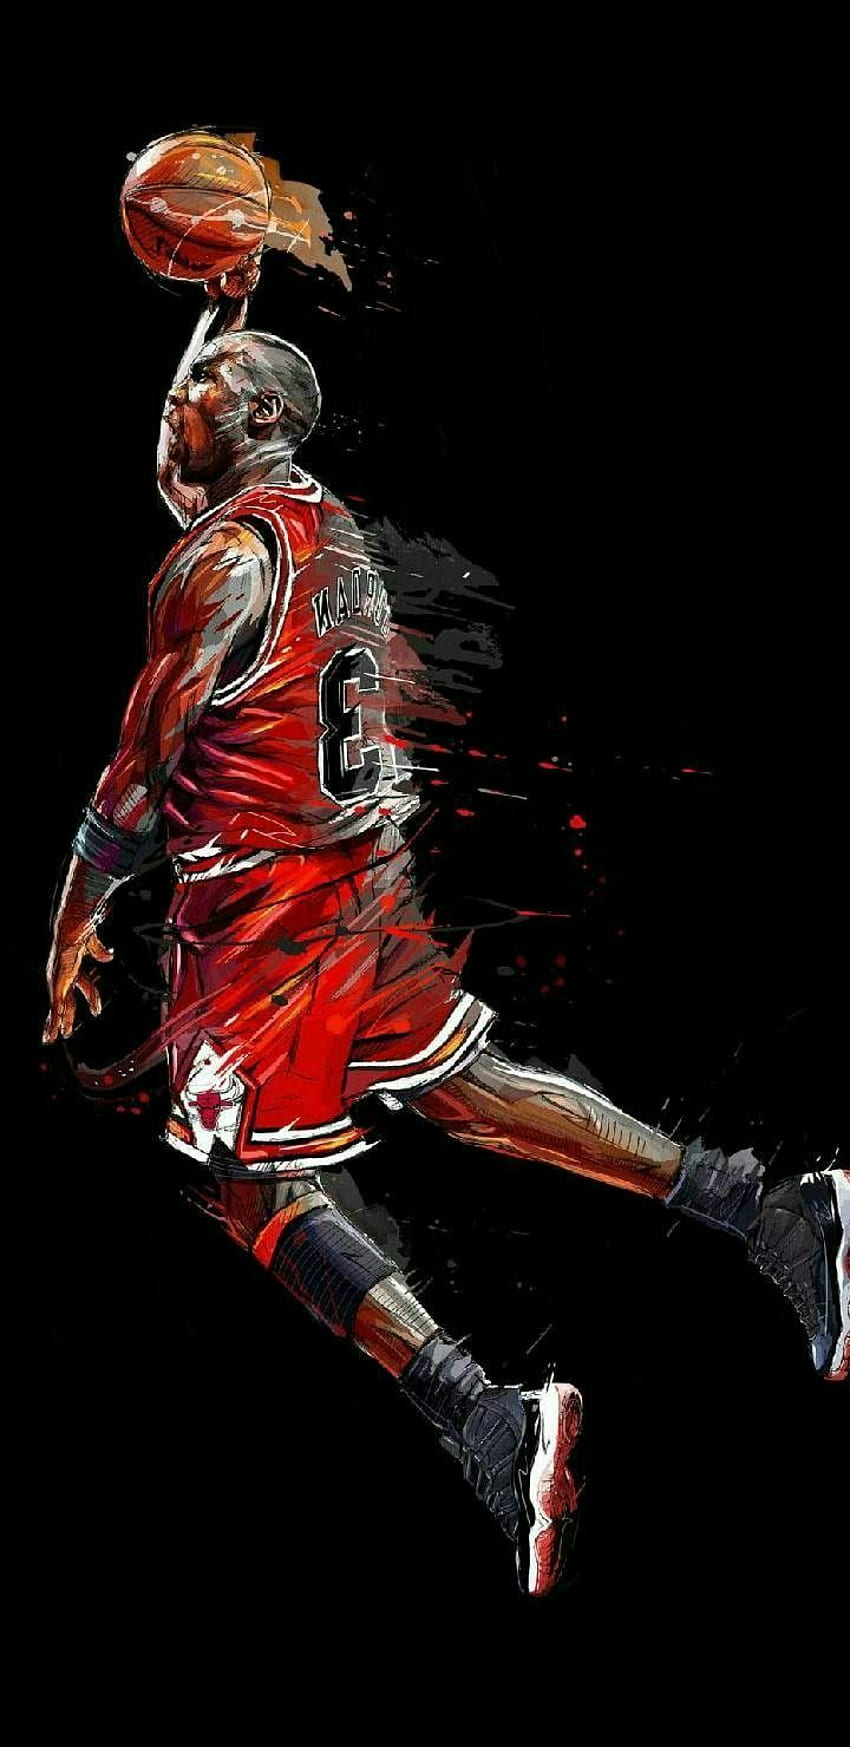 48 Michael Jordan Wallpaper for iPhone  WallpaperSafari